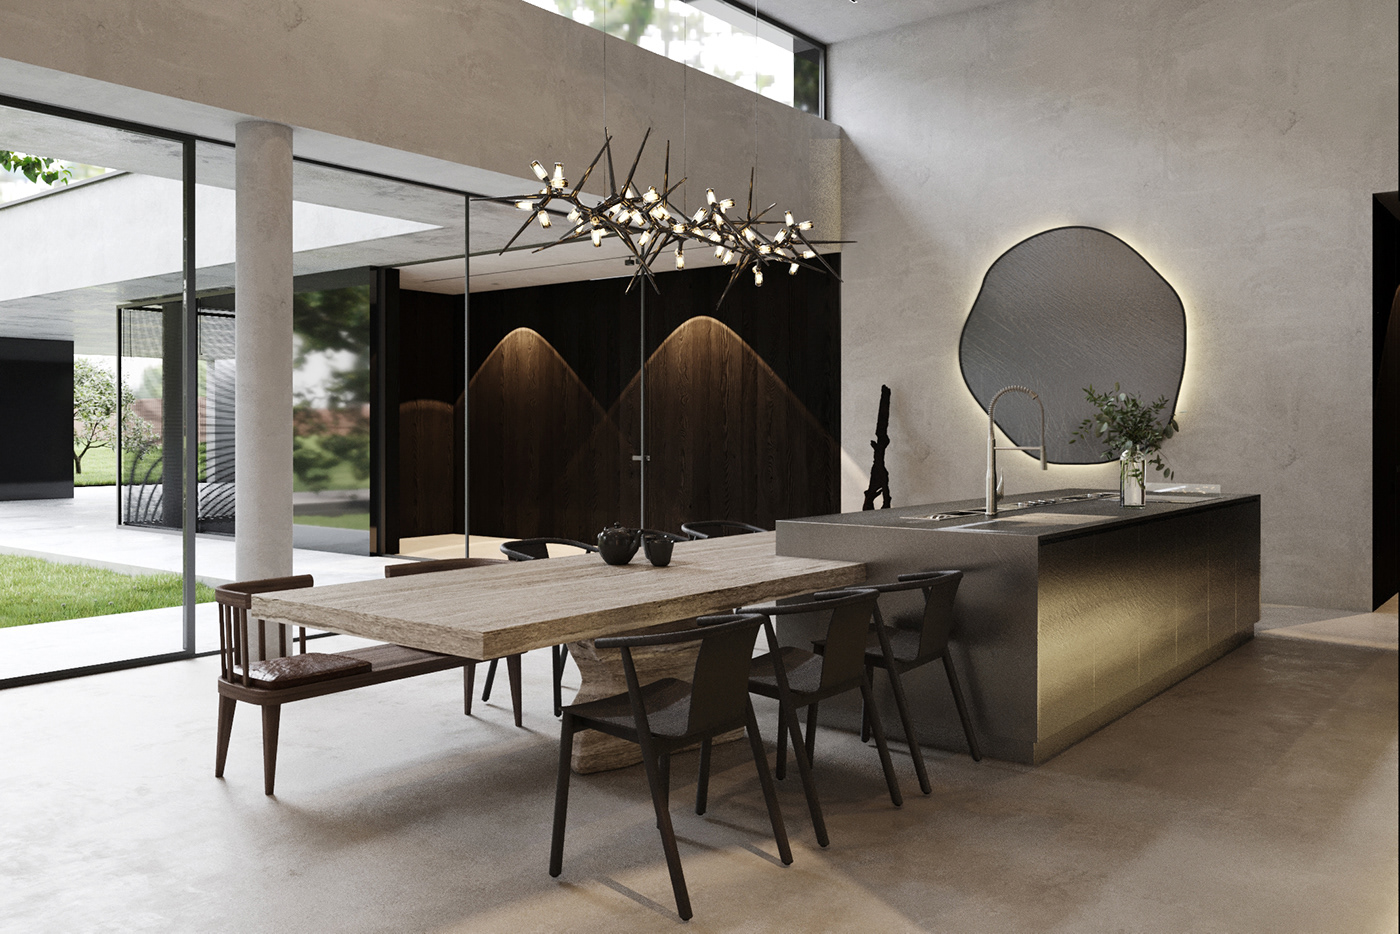 3dsmax archviz corona Interior kitchen living room visualization architecture home house